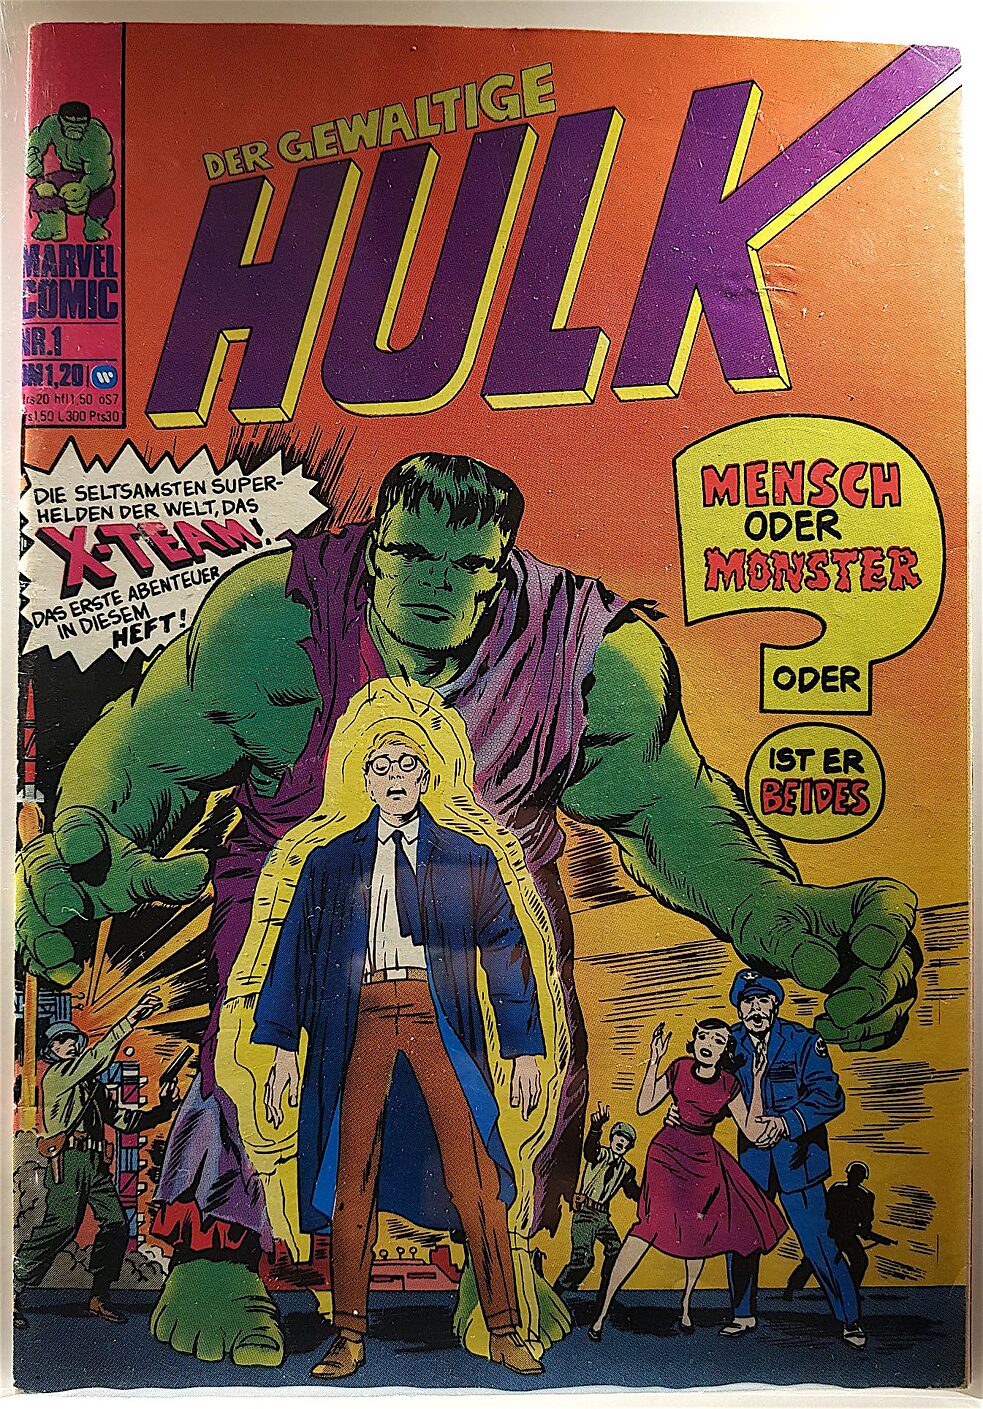 Première page allemande Hulk Nr.1 avec le Hulk déjà teinté en vert